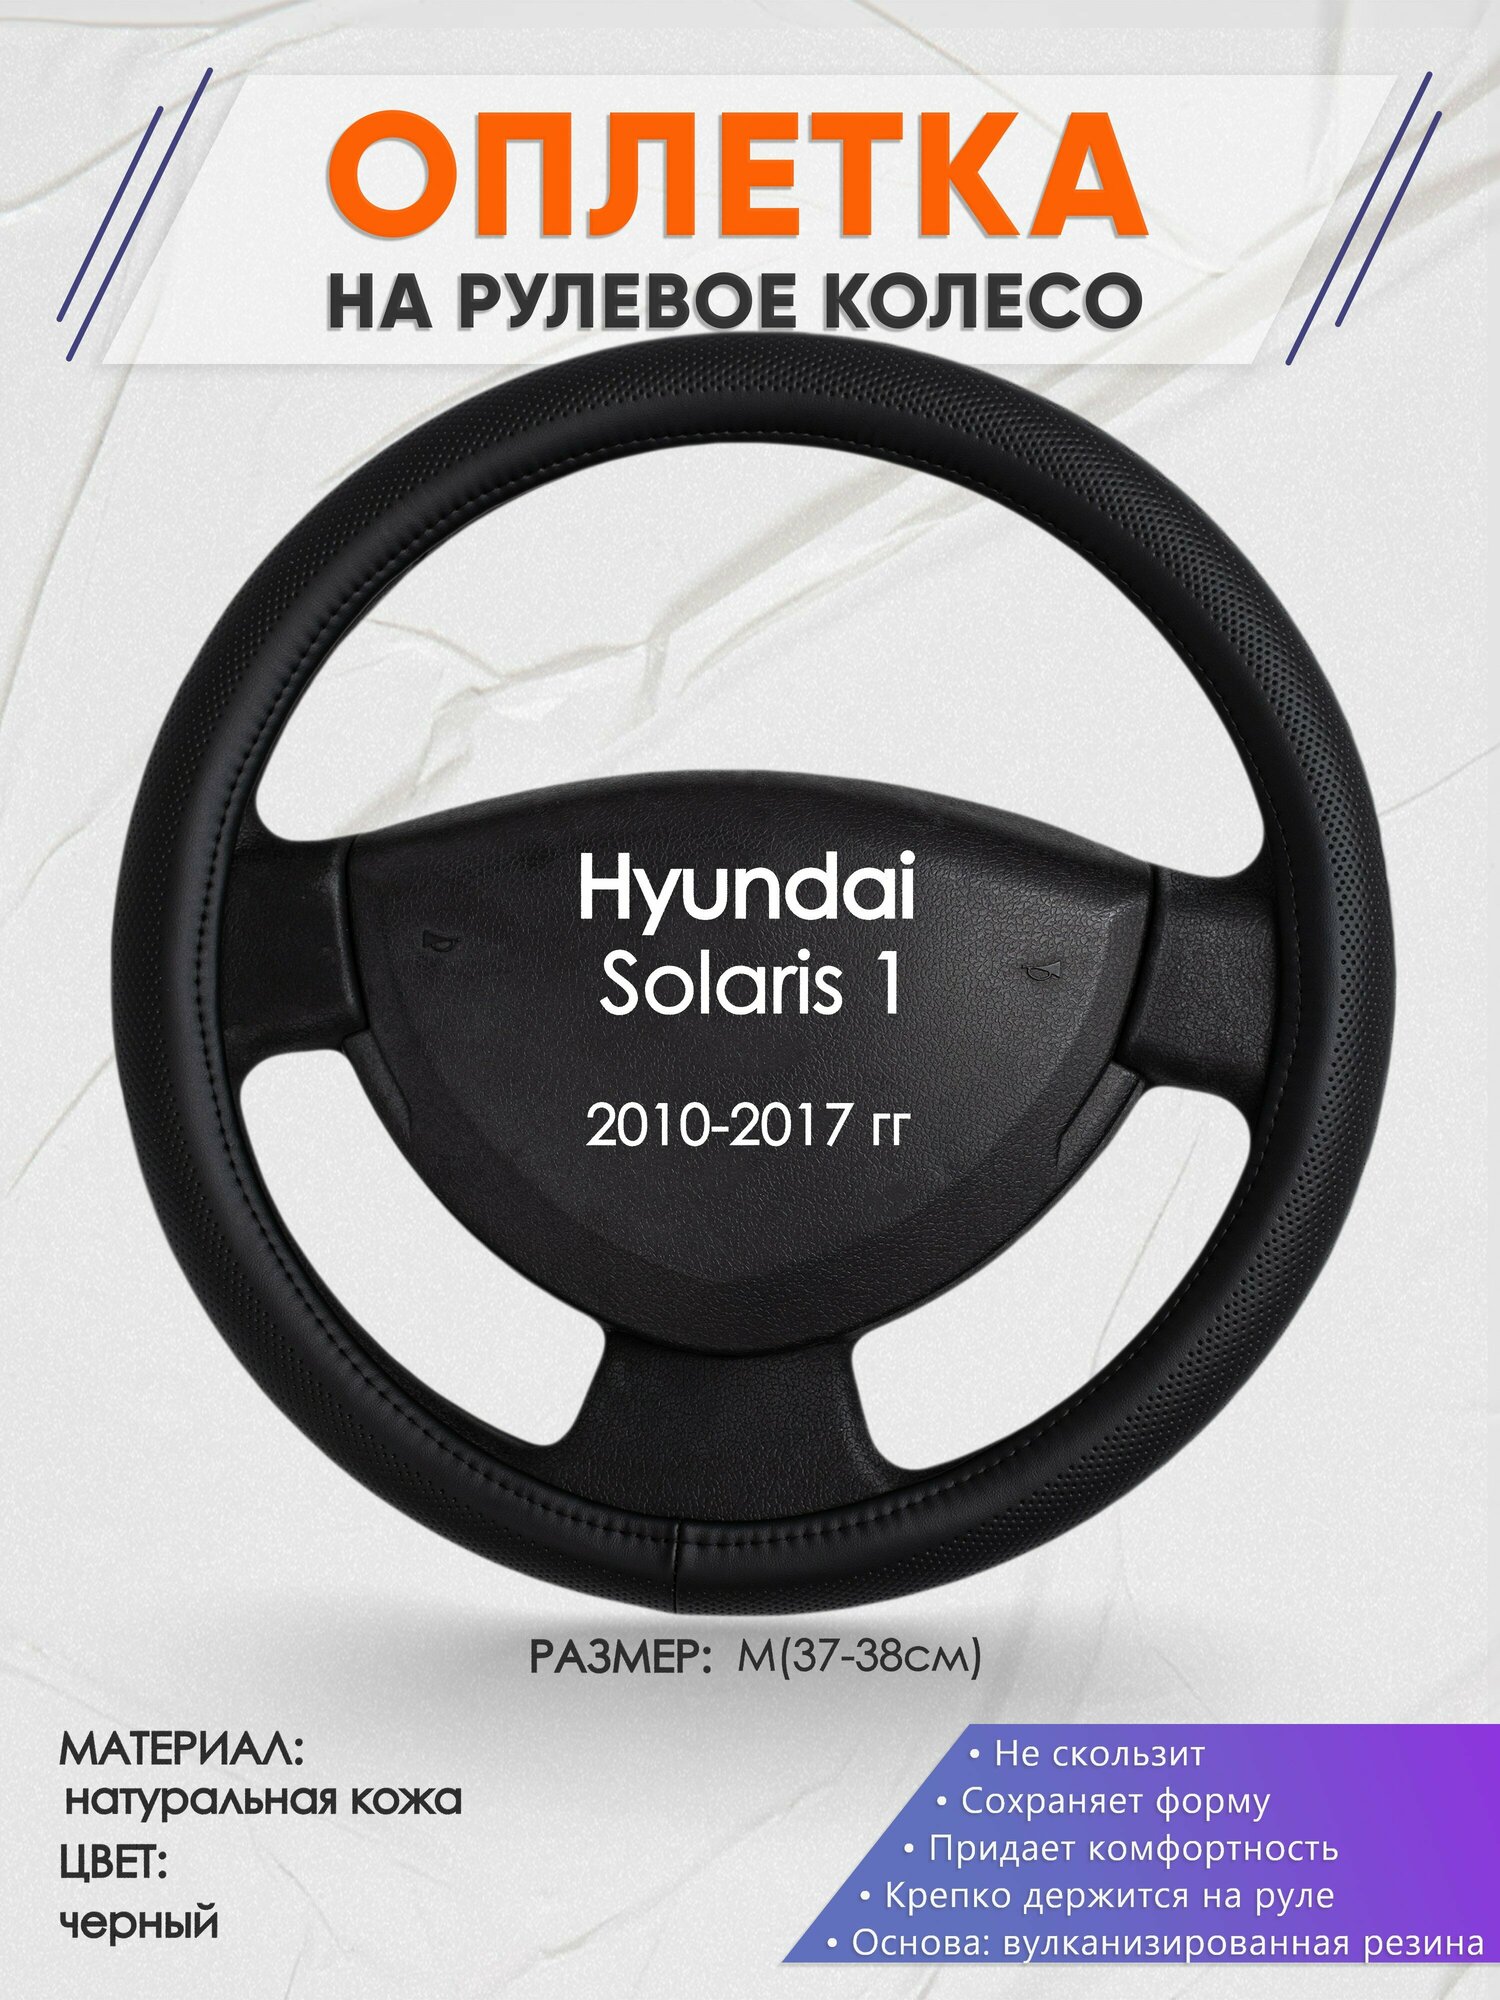 Оплетка на руль для Hyundai Solaris 1(Хендай Солярис 1) 2010-2017, M(37-38см), Натуральная кожа 24